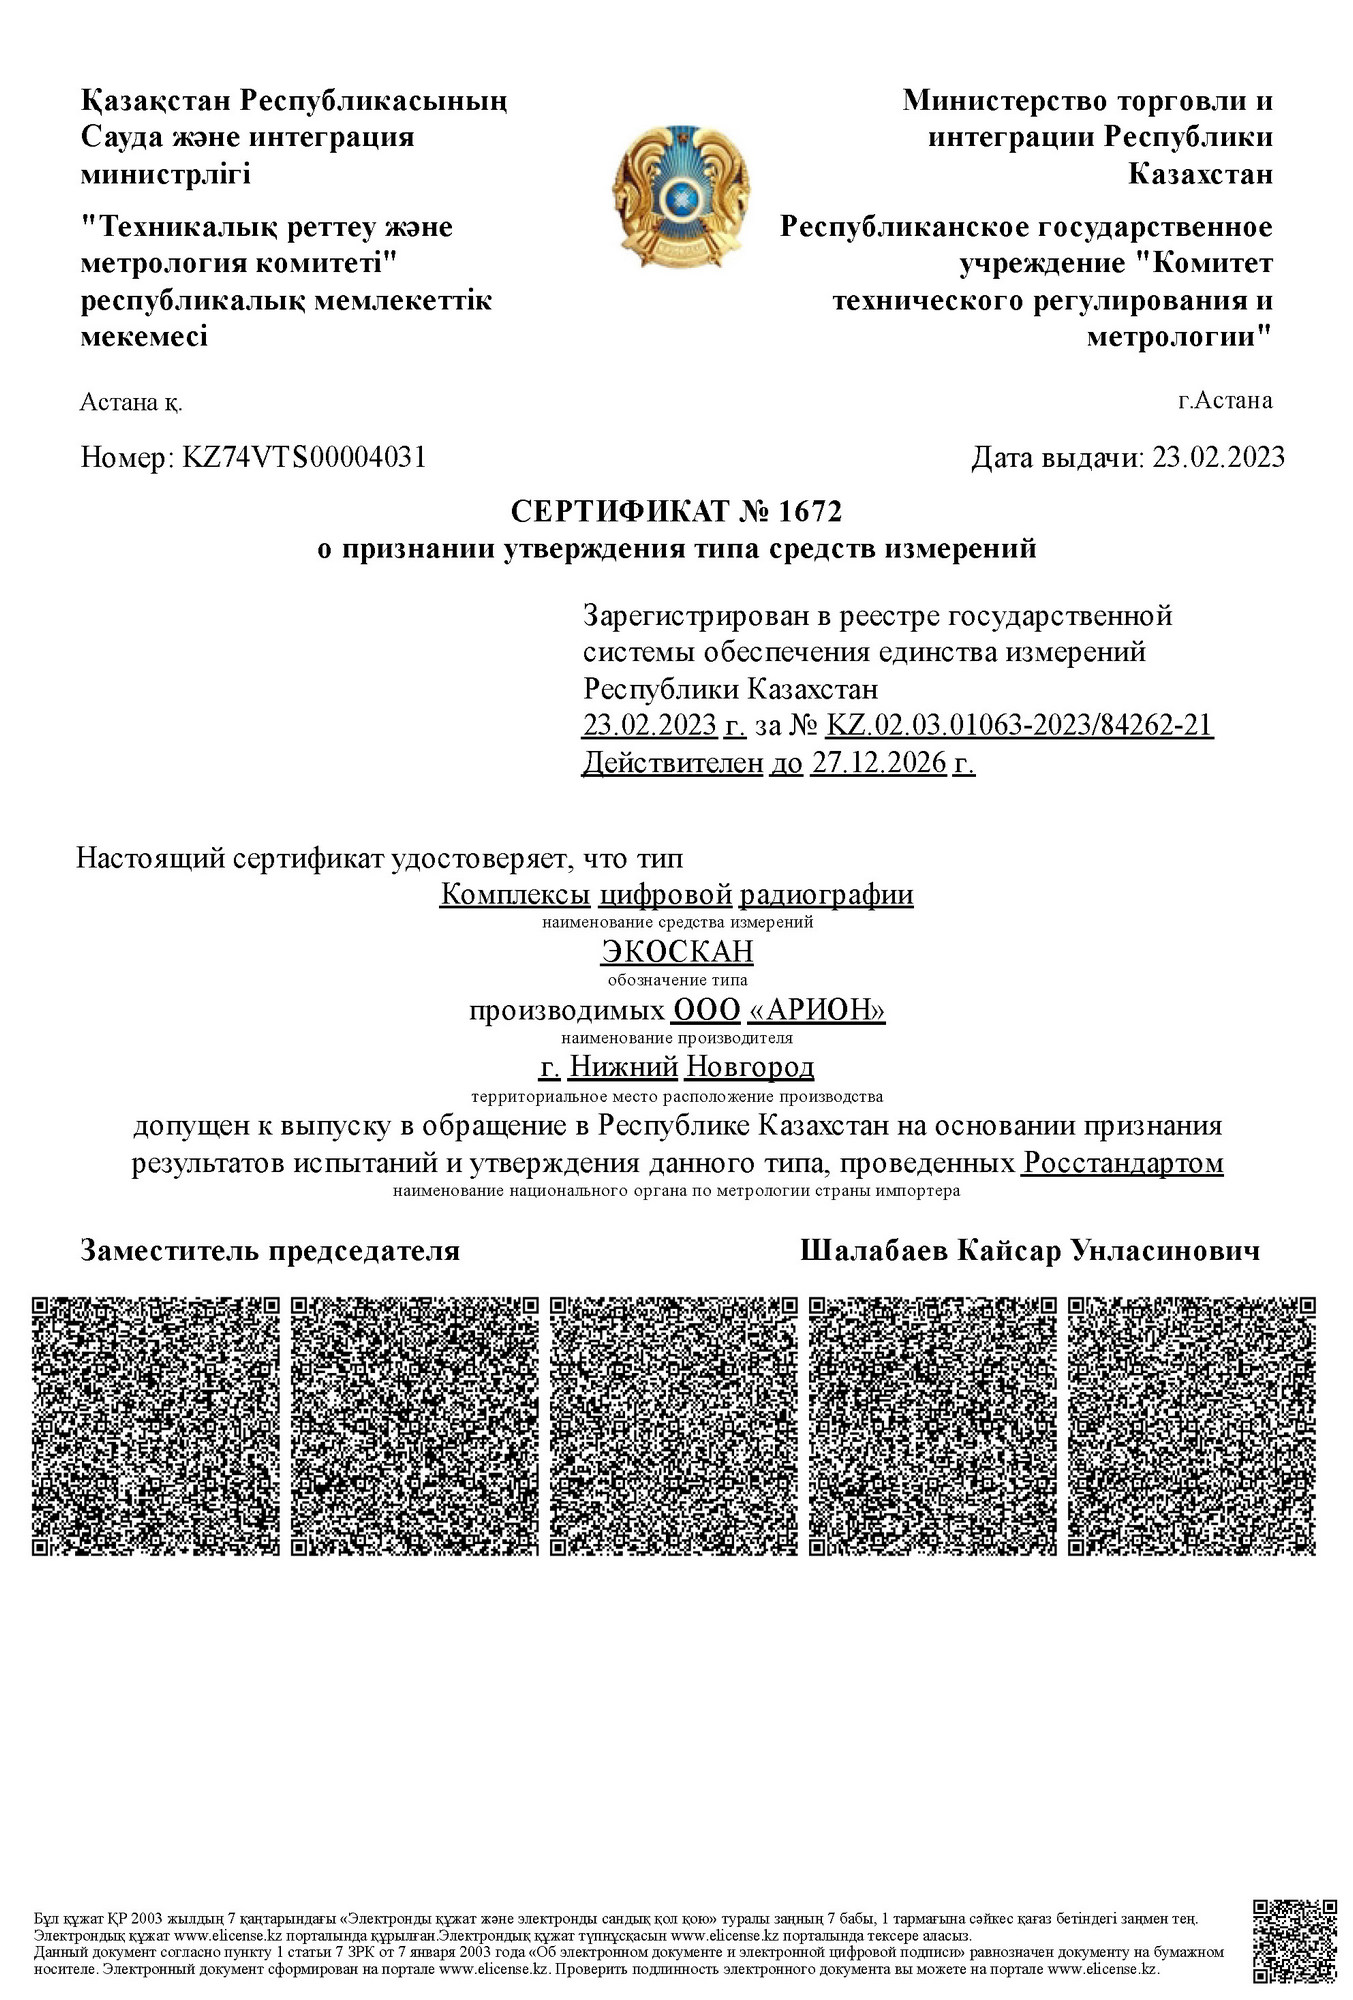 Сертификат об утверждении типа СИ в Республике Казахстан